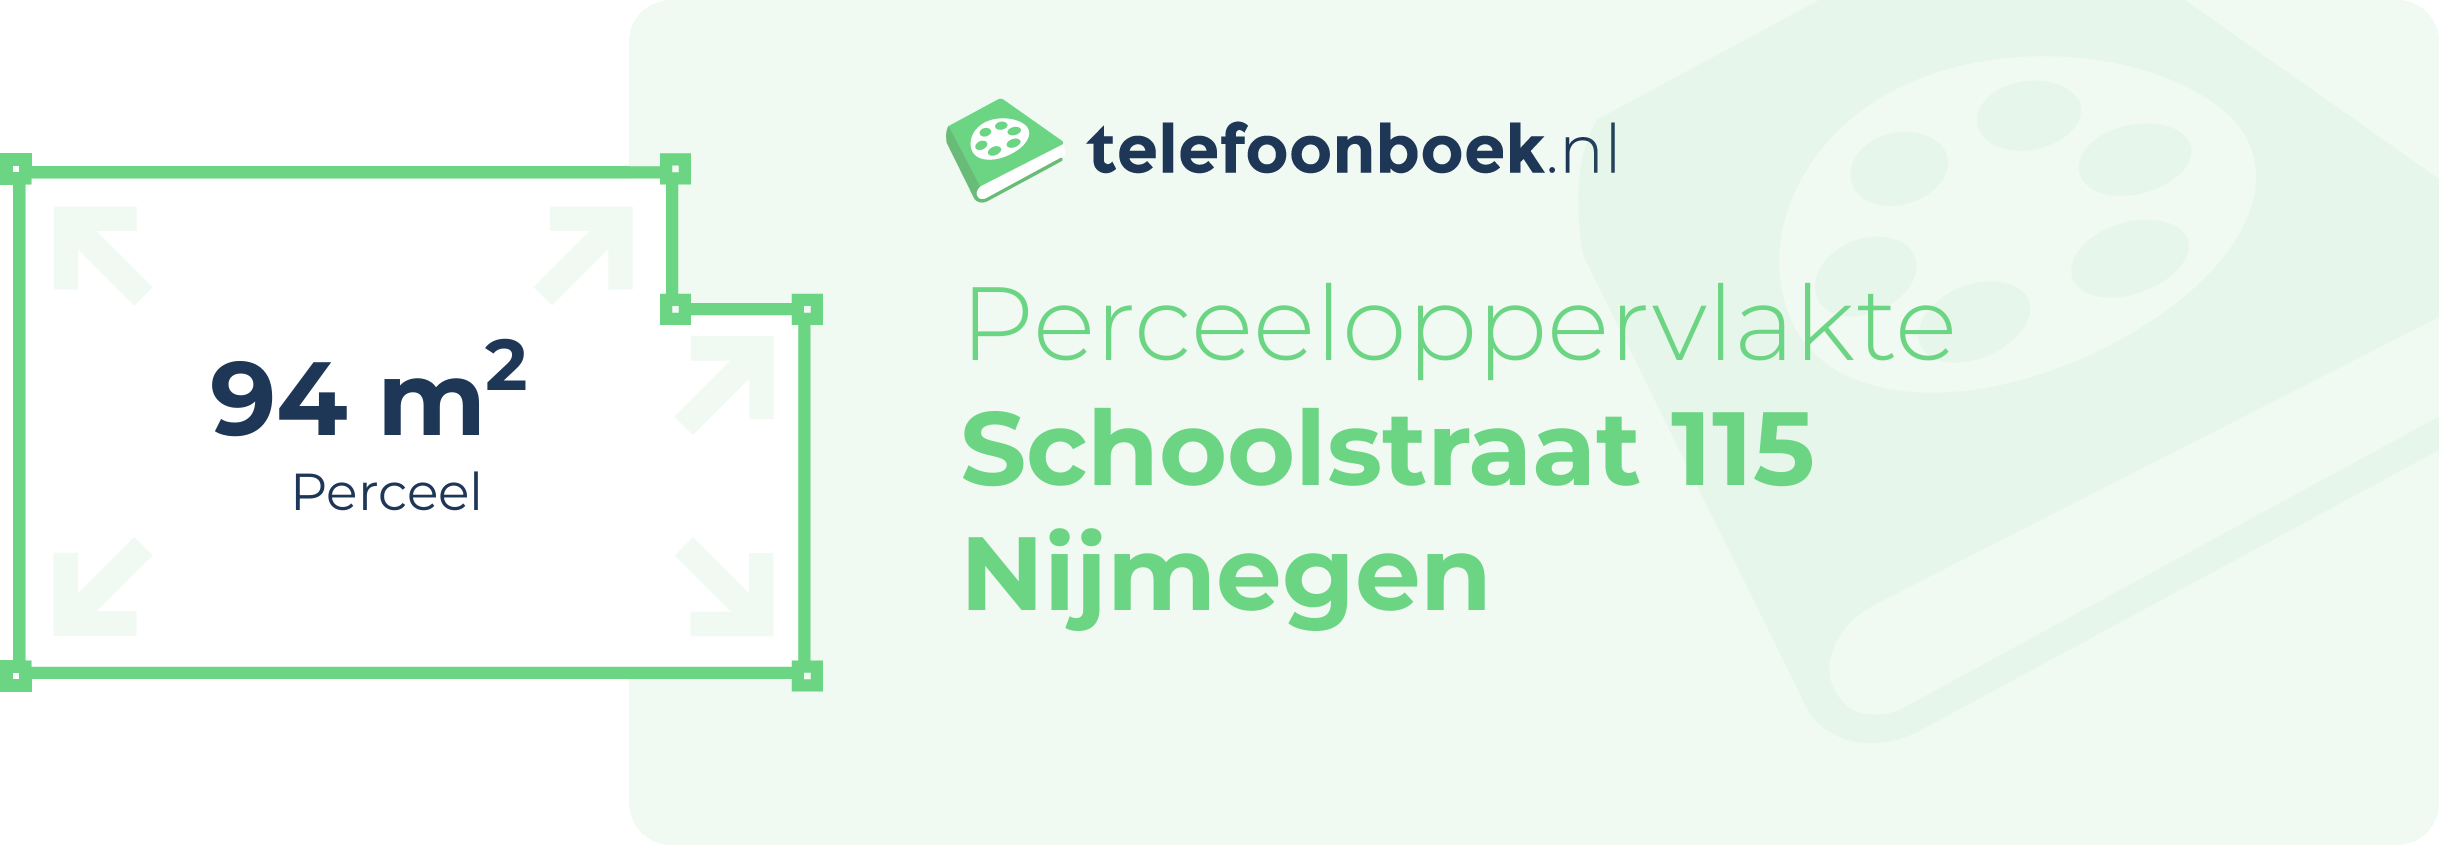 Perceeloppervlakte Schoolstraat 115 Nijmegen